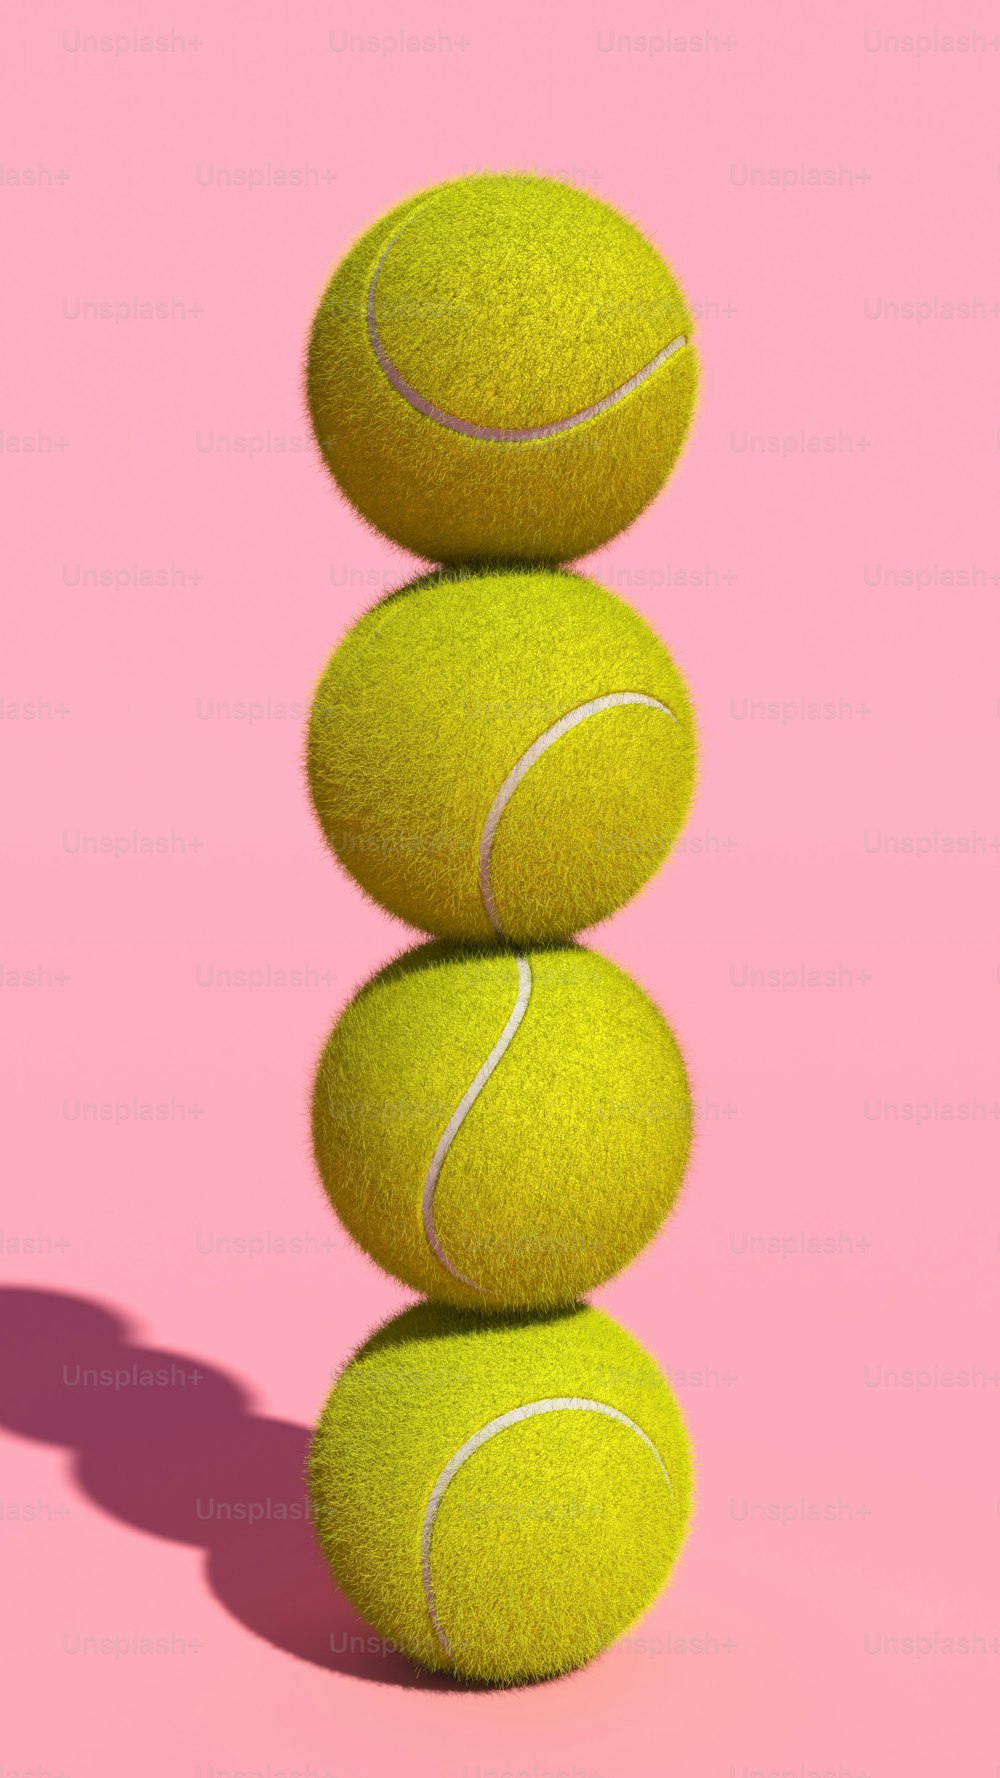 Una pila de pelotas de tenis sentadas una encima de la otra